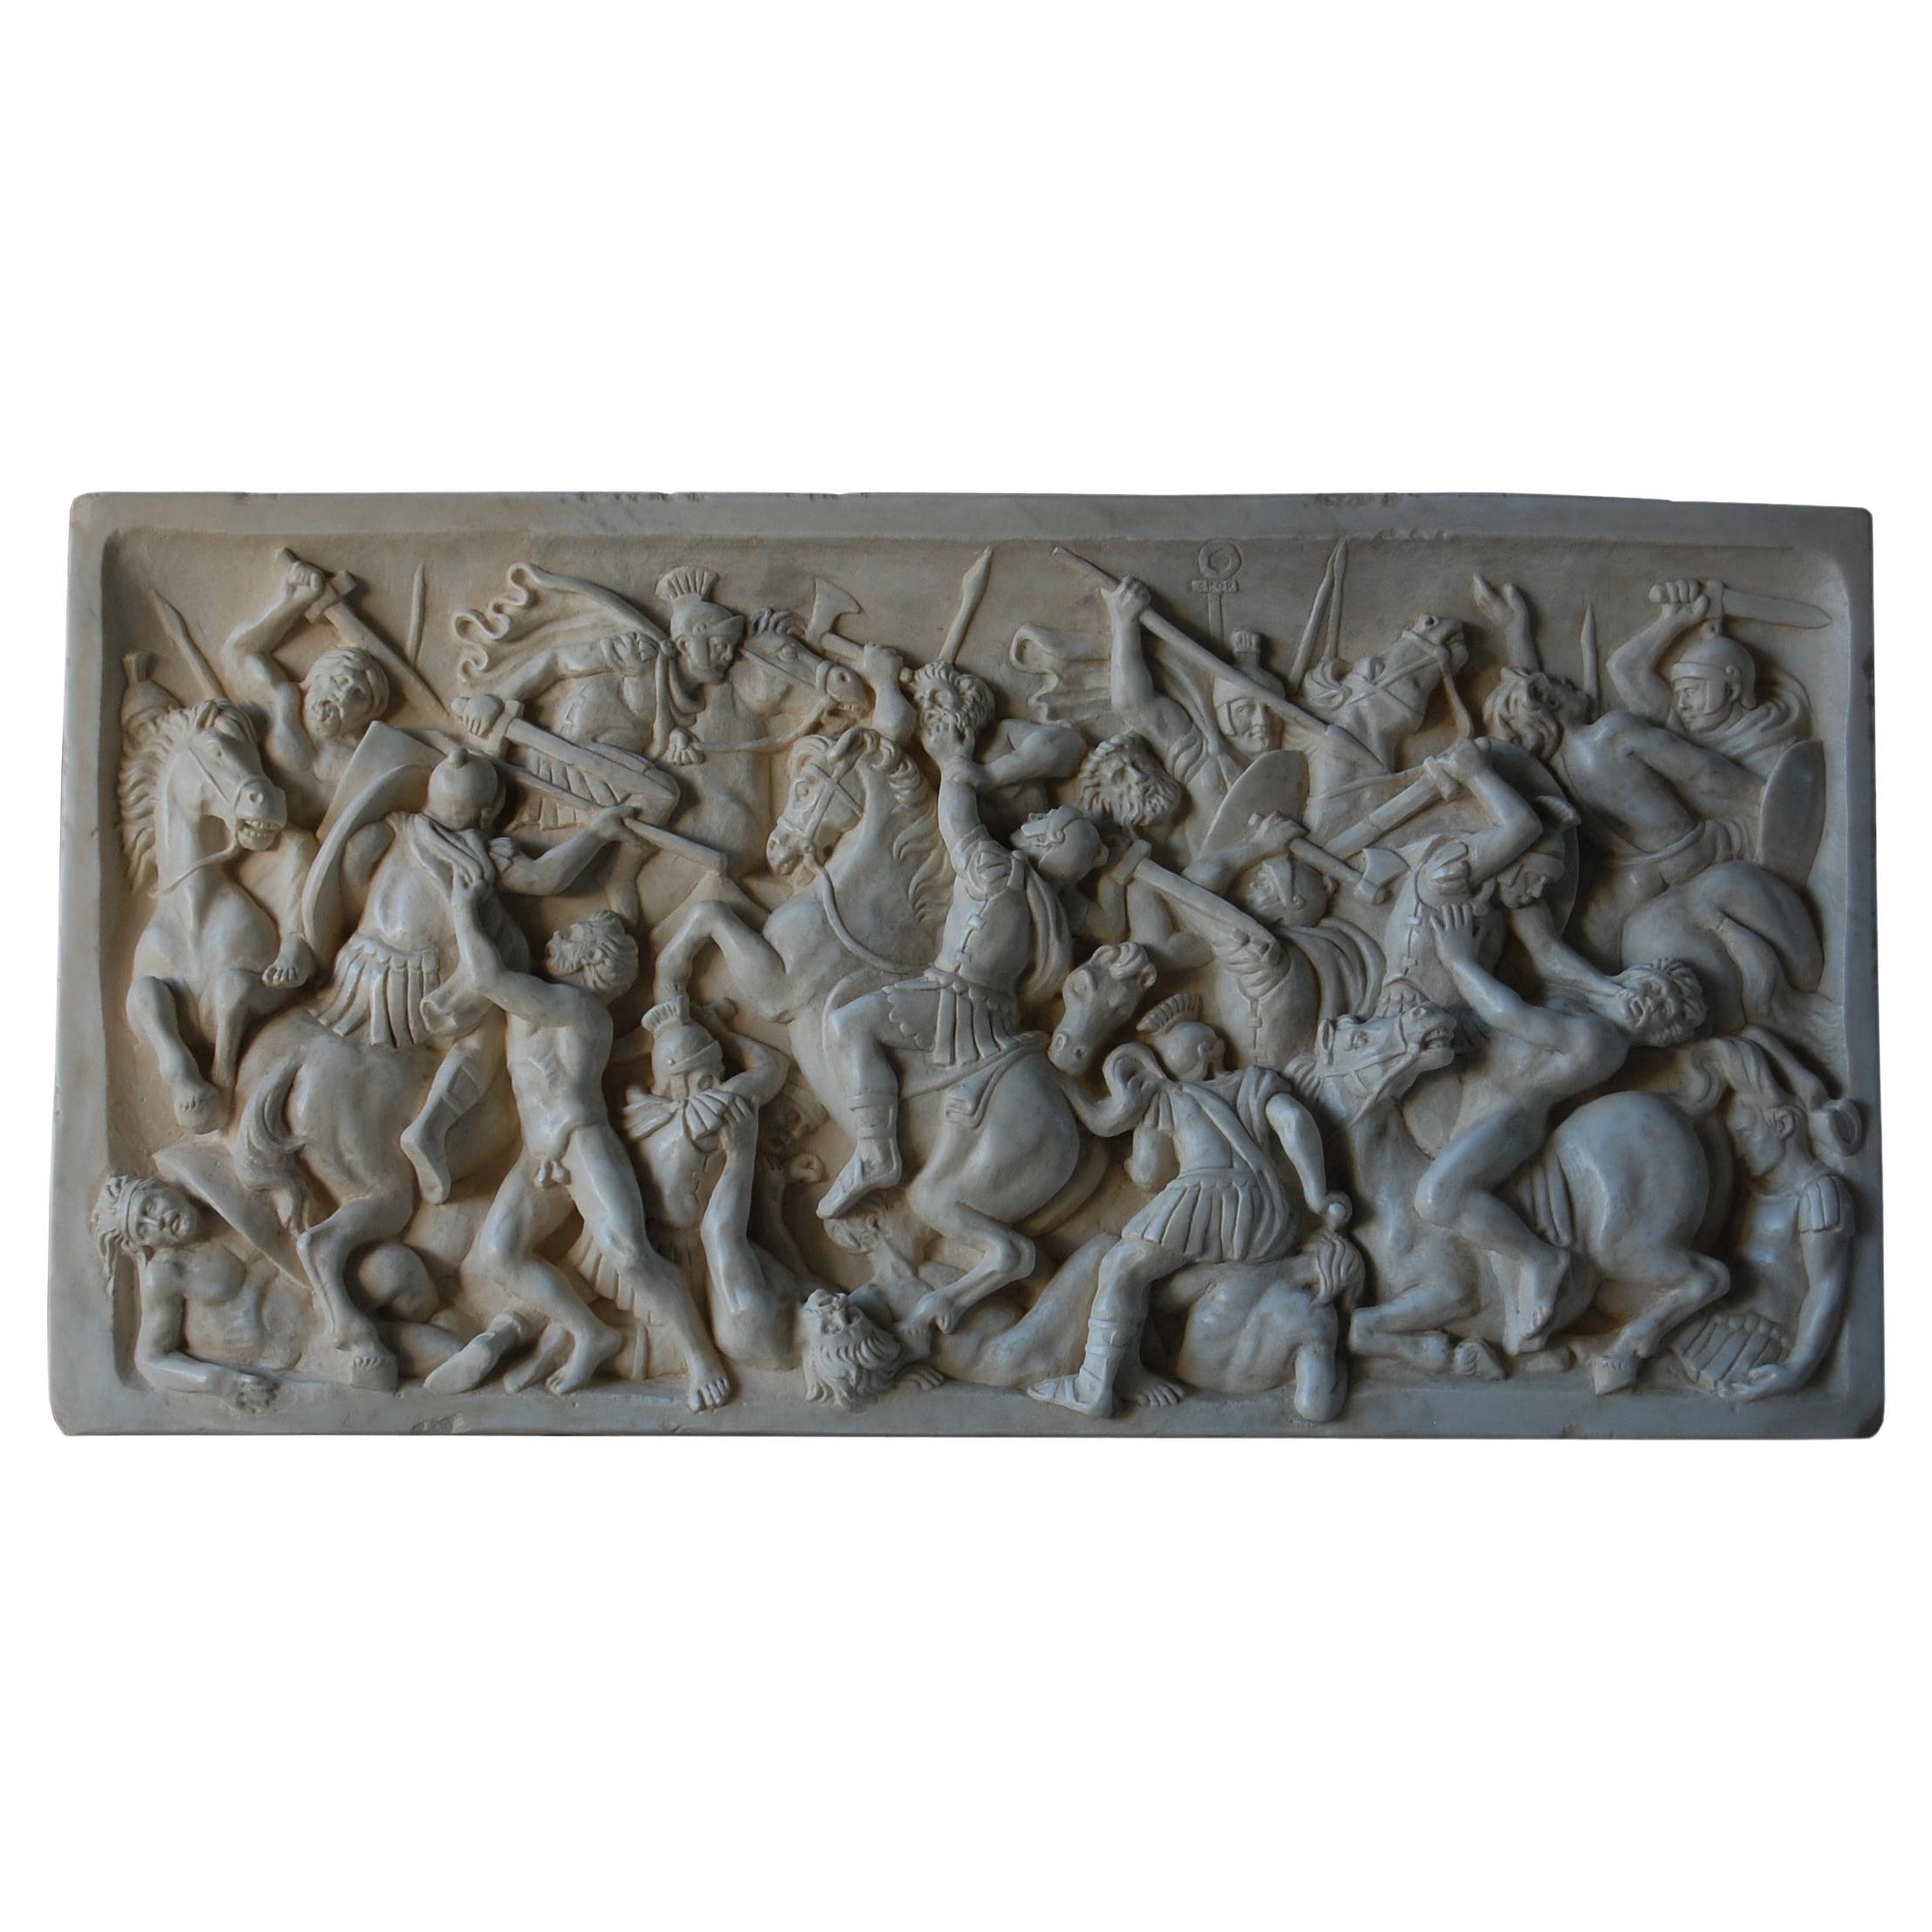 Altorilievo battaglia romana en marmo bianco di Carrara